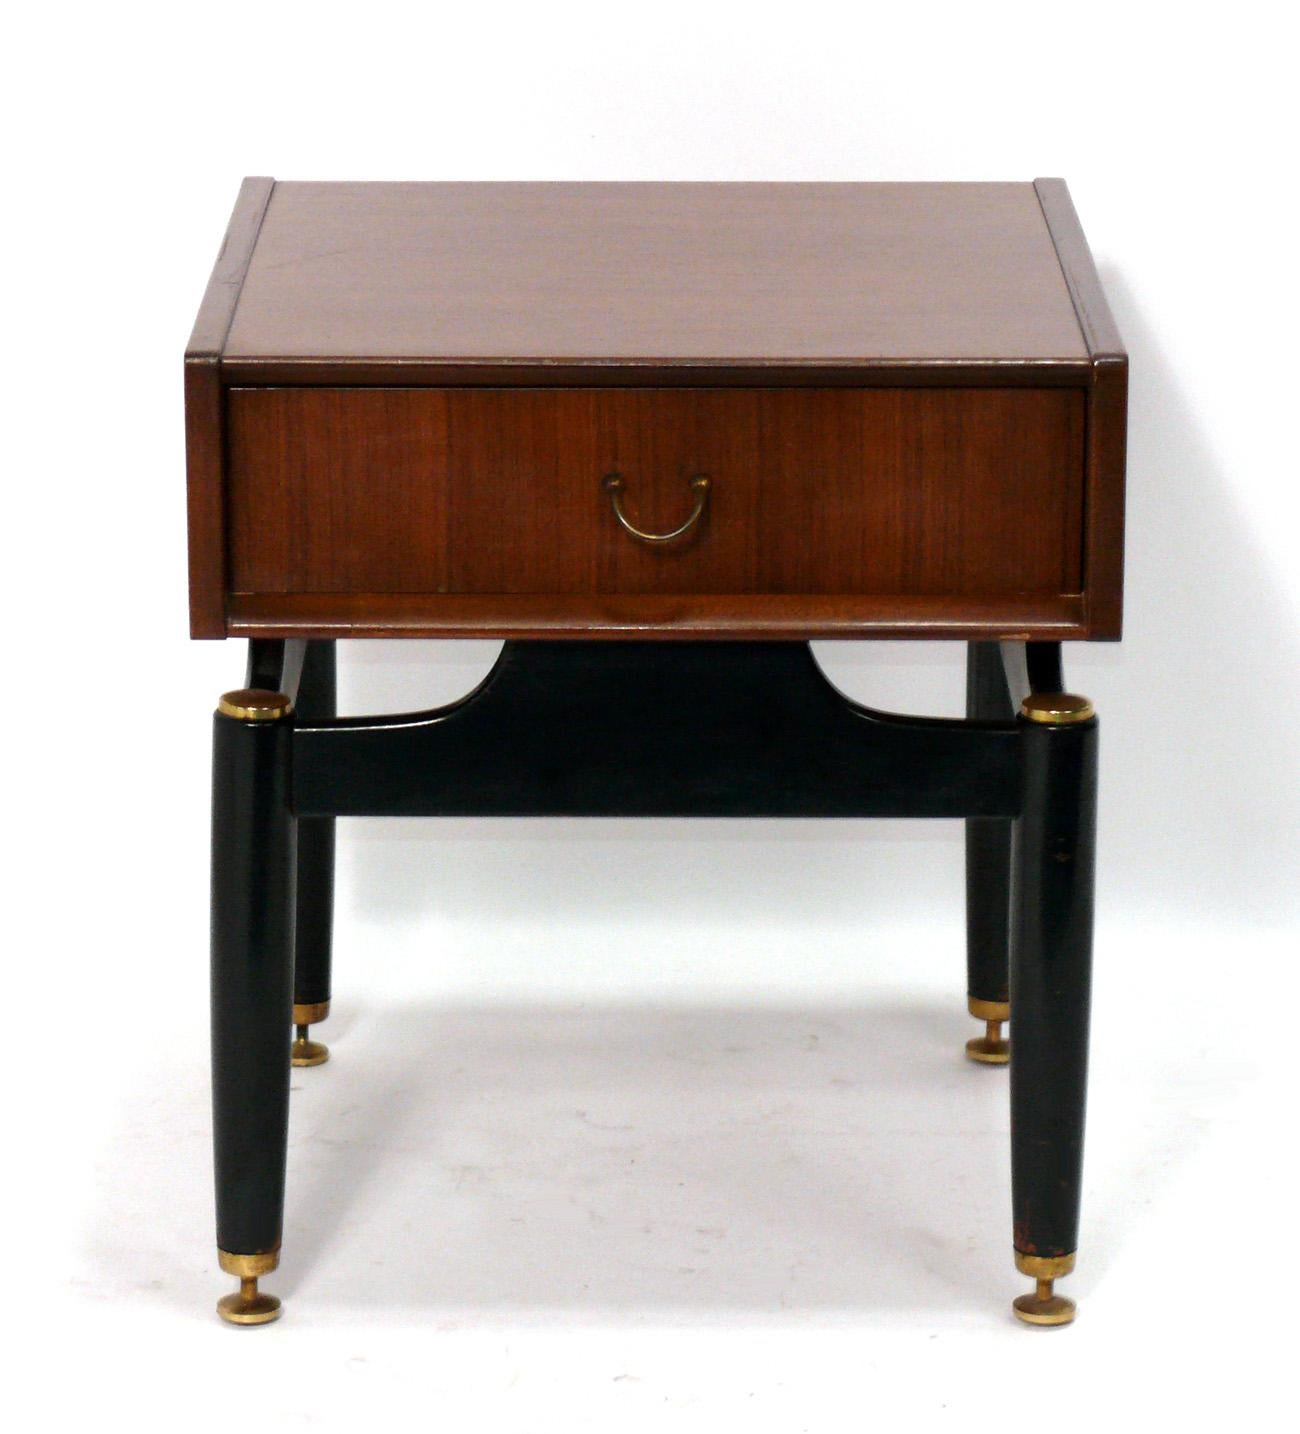 Tables de chevet ou tables d'appoint danoises modernes, fabriquées par G-Plan Furniture, Angleterre, vers les années 1960. Bien que situées en Angleterre, les conceptions de G-Plan ont été clairement influencées par le design moderne danois de